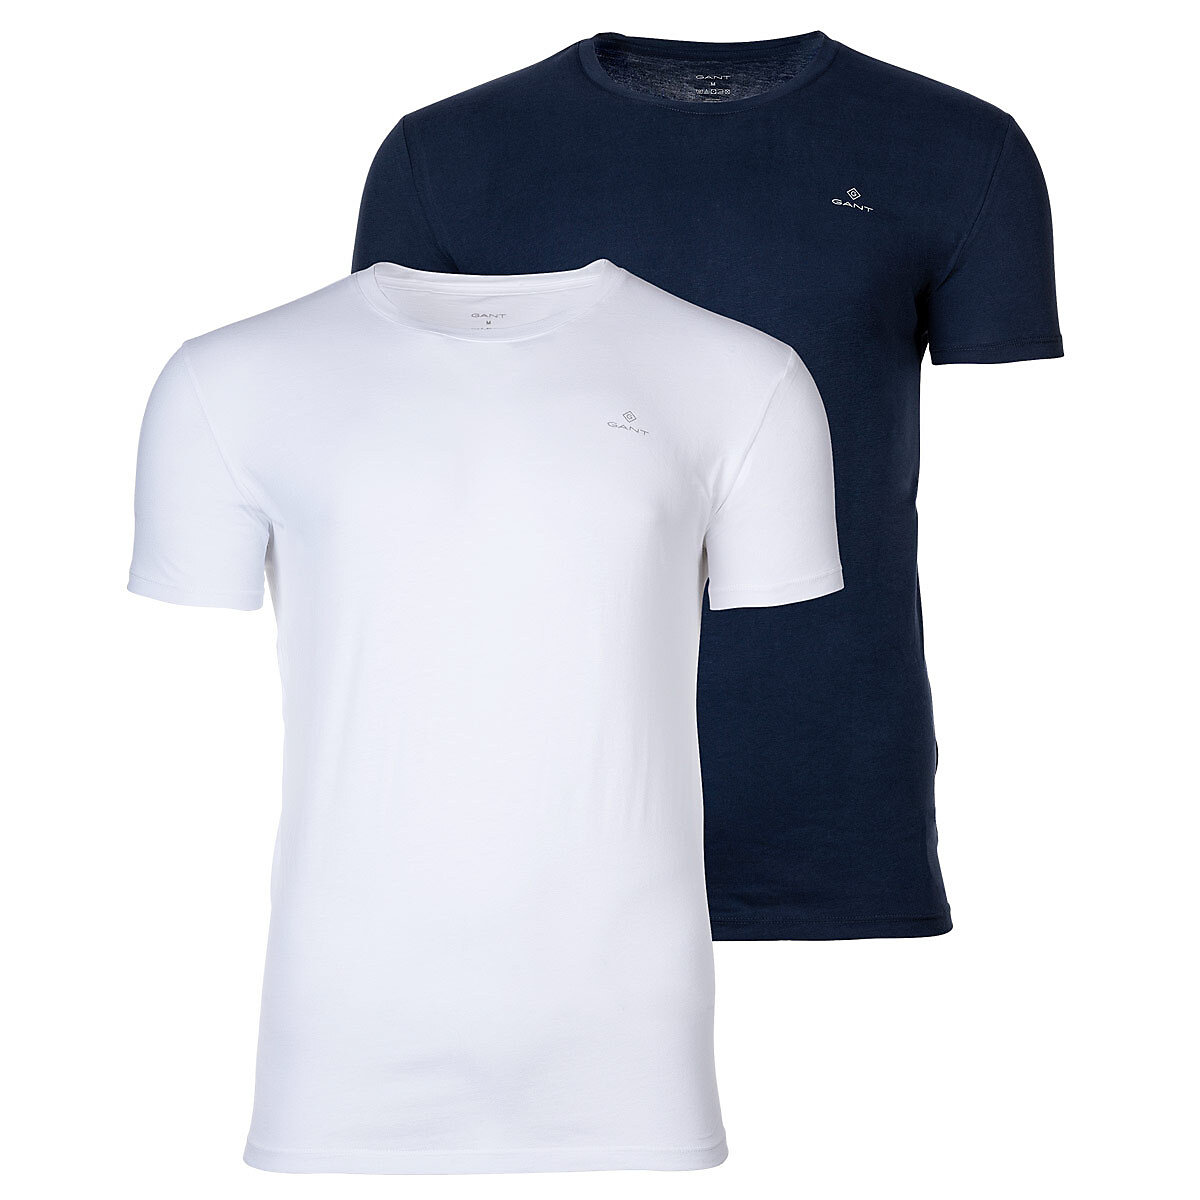 GANT Herren T-Shirt 2er Pack Rundhals Crew Neck kurzarm Baumwolle T-Shirts blau/weiß